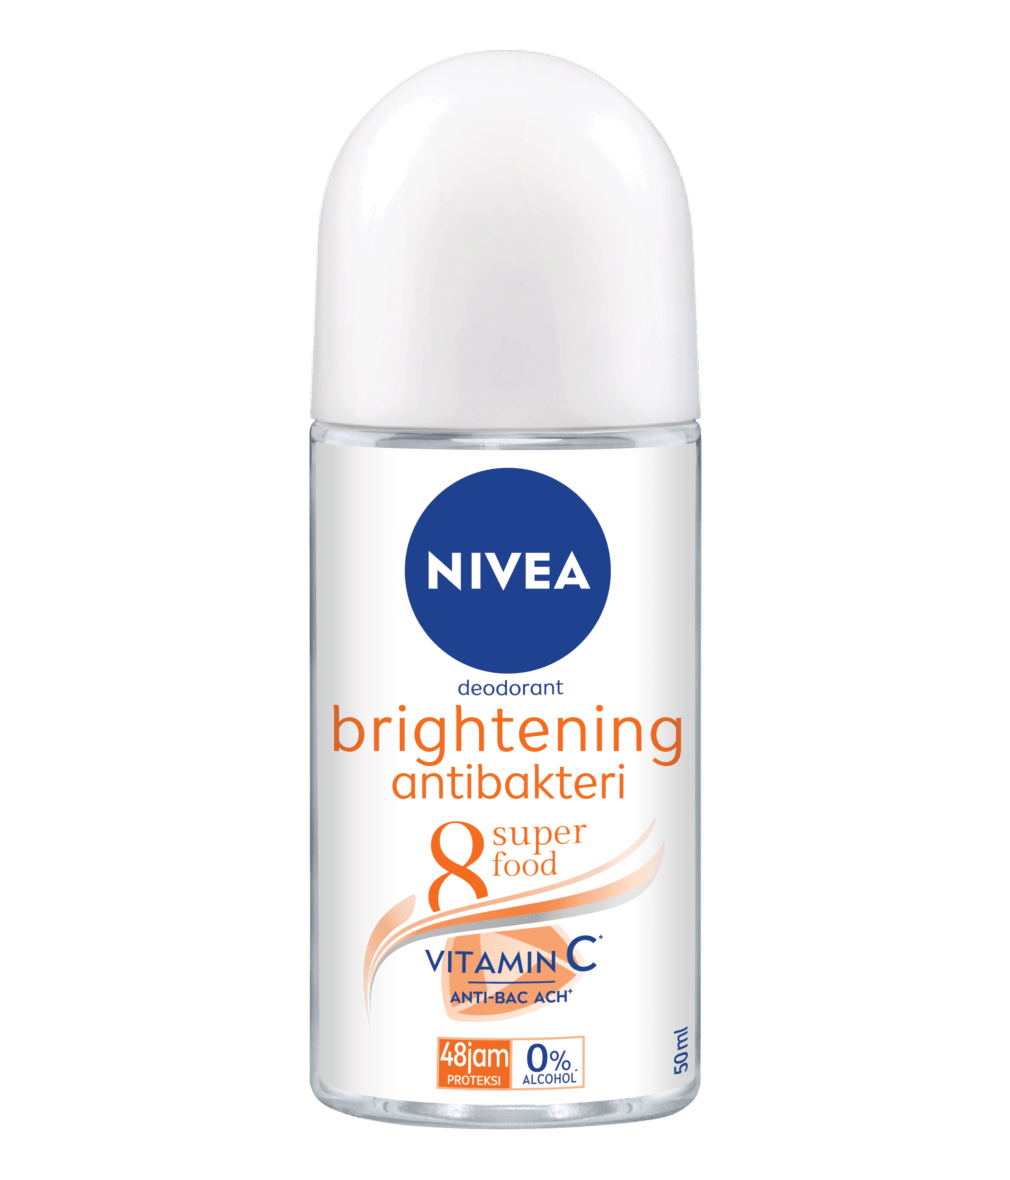 NIVEA Brightening Antibakteri 8 Superfood Deodorant Roll On